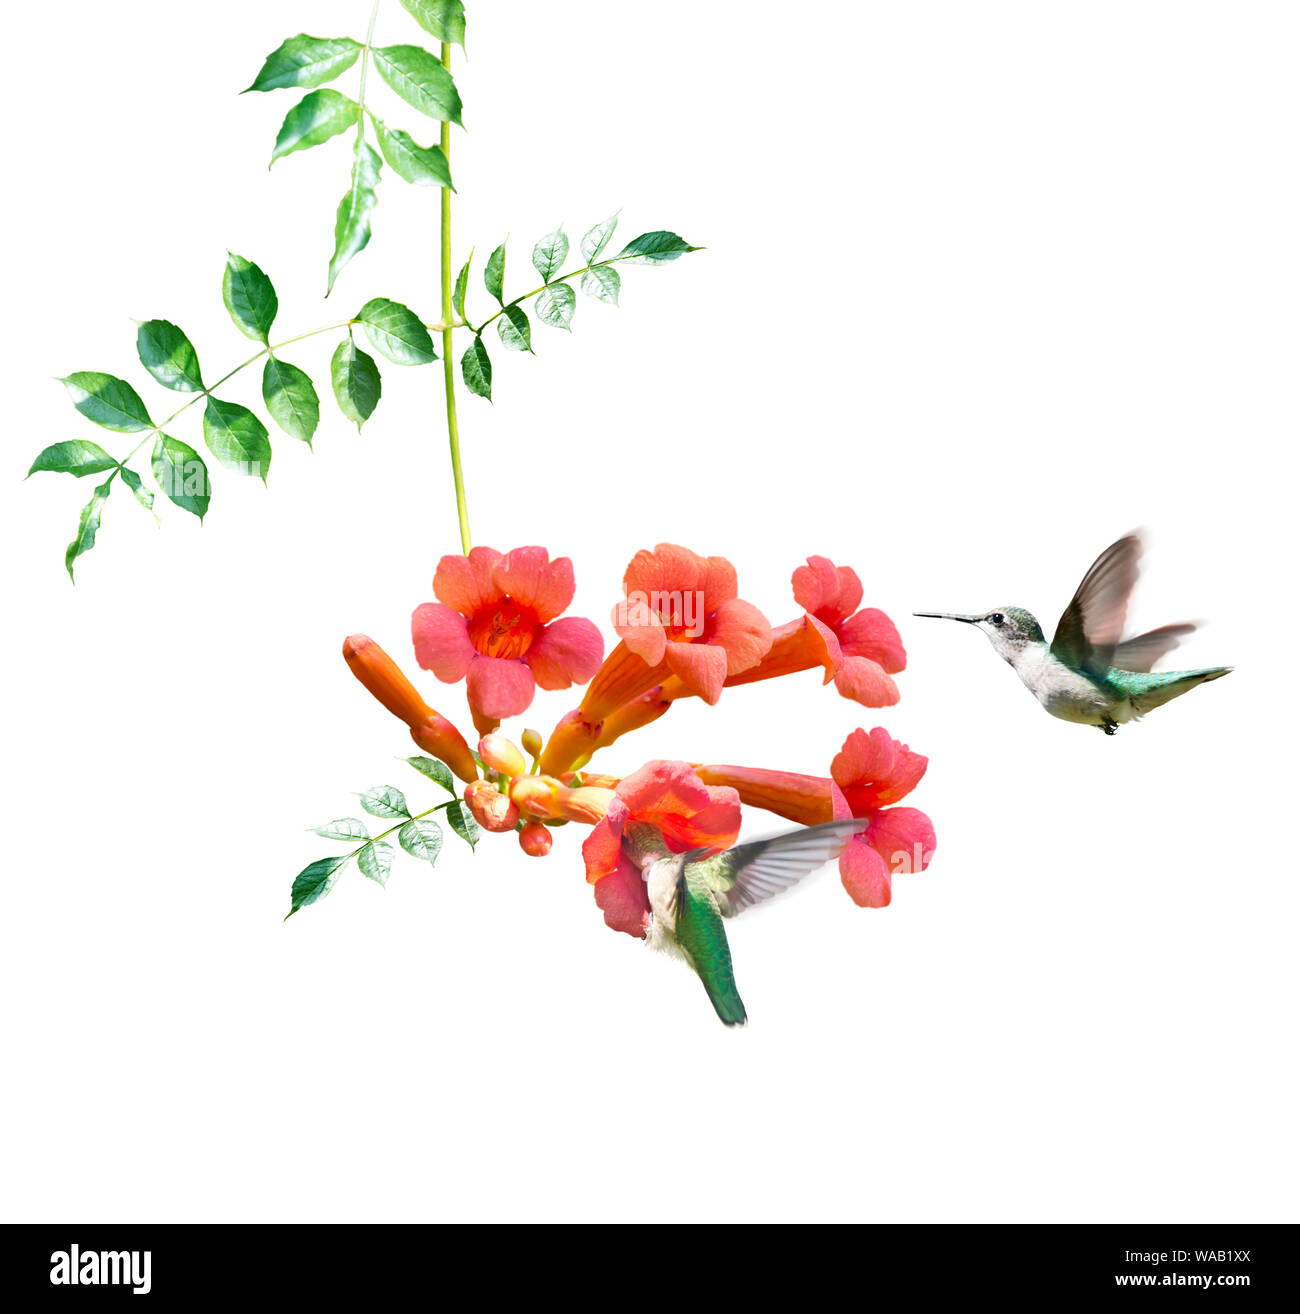 Les colibris à gorge rubis se nourrissent de nectar de vigne d'une trompette sur fond blanc Banque D'Images